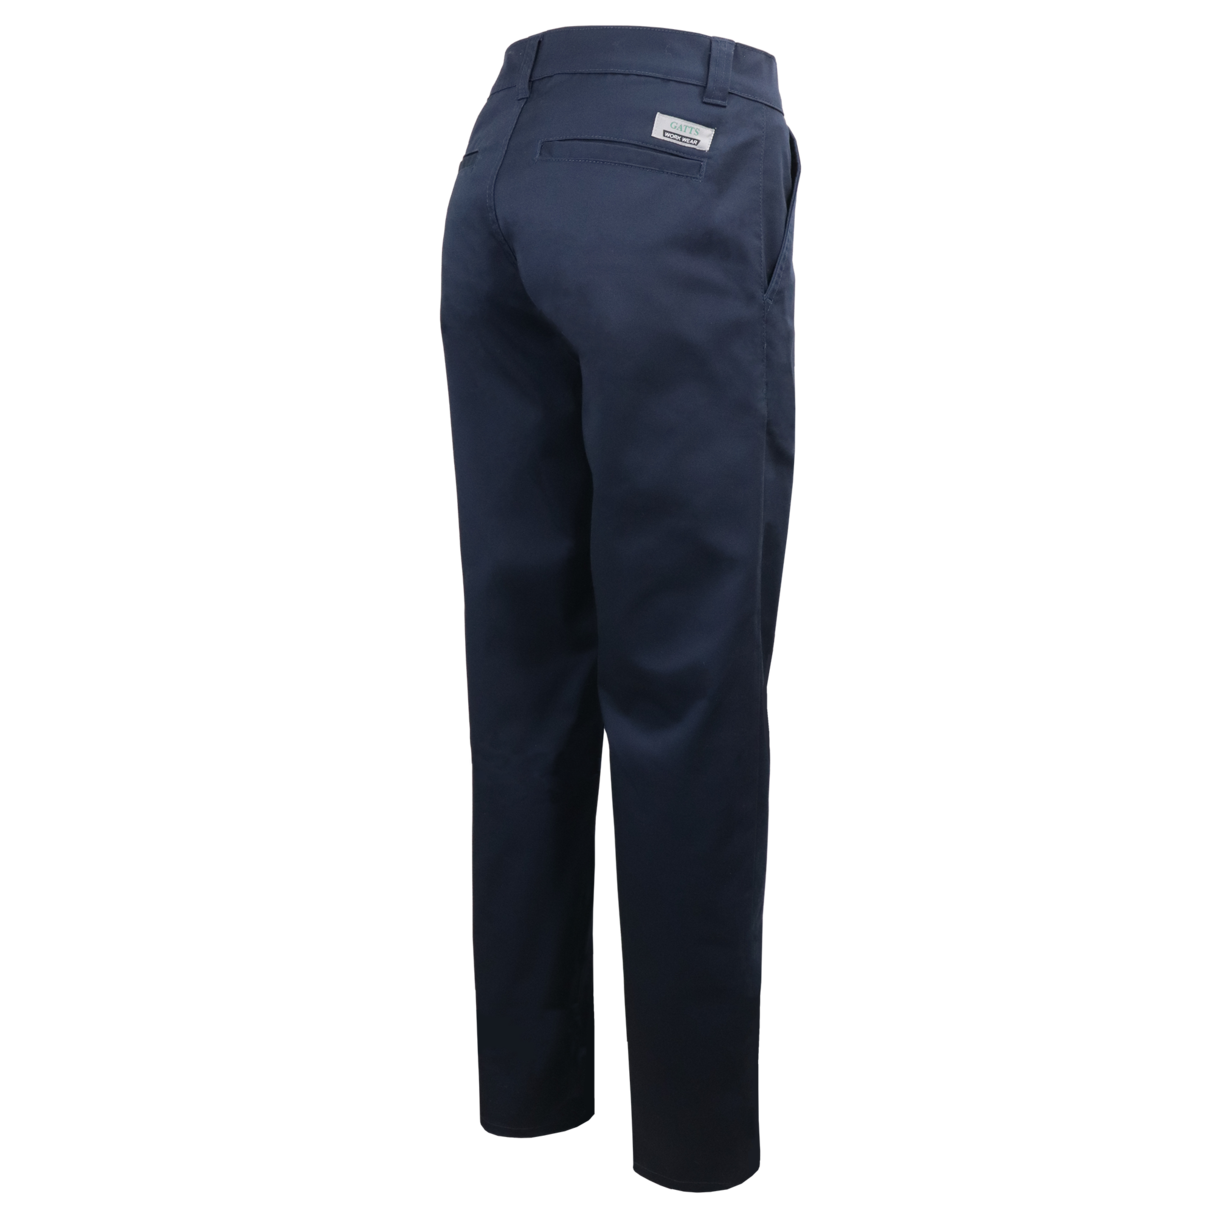 Pantalon de travail extensible pour homme Gatts #777EX marine dos